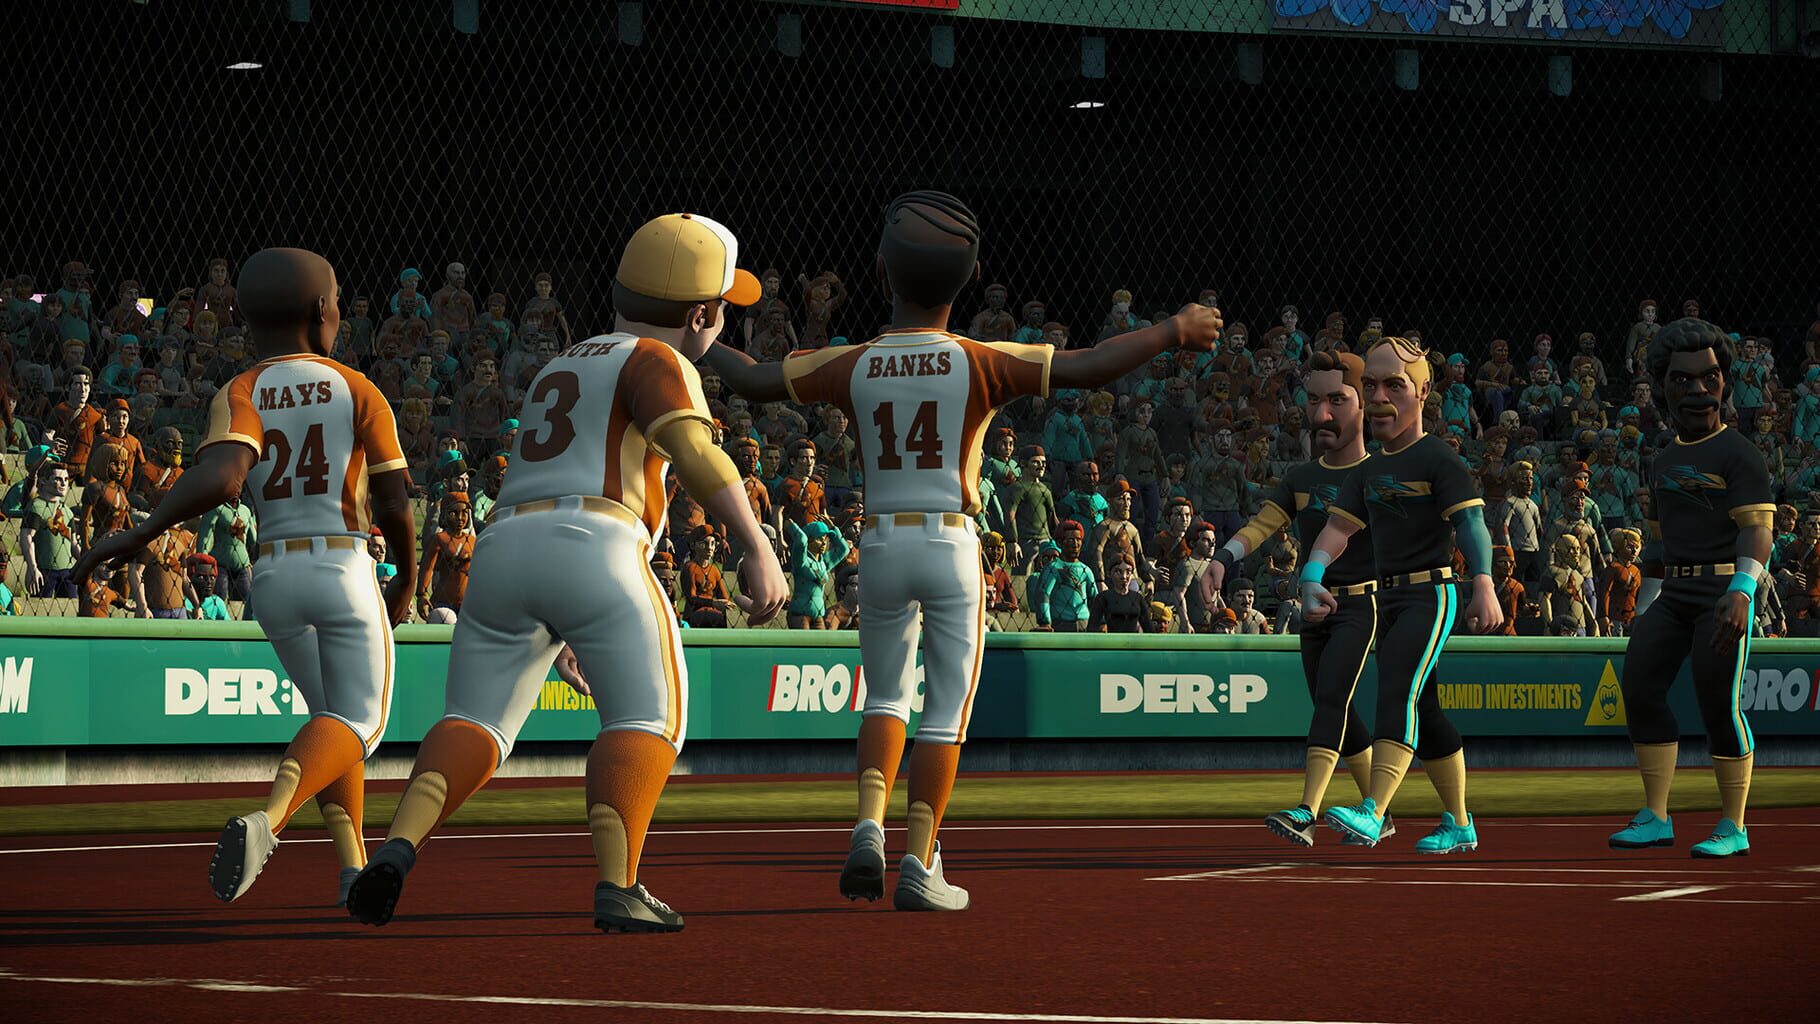 Captura de pantalla - Super Mega Baseball 4